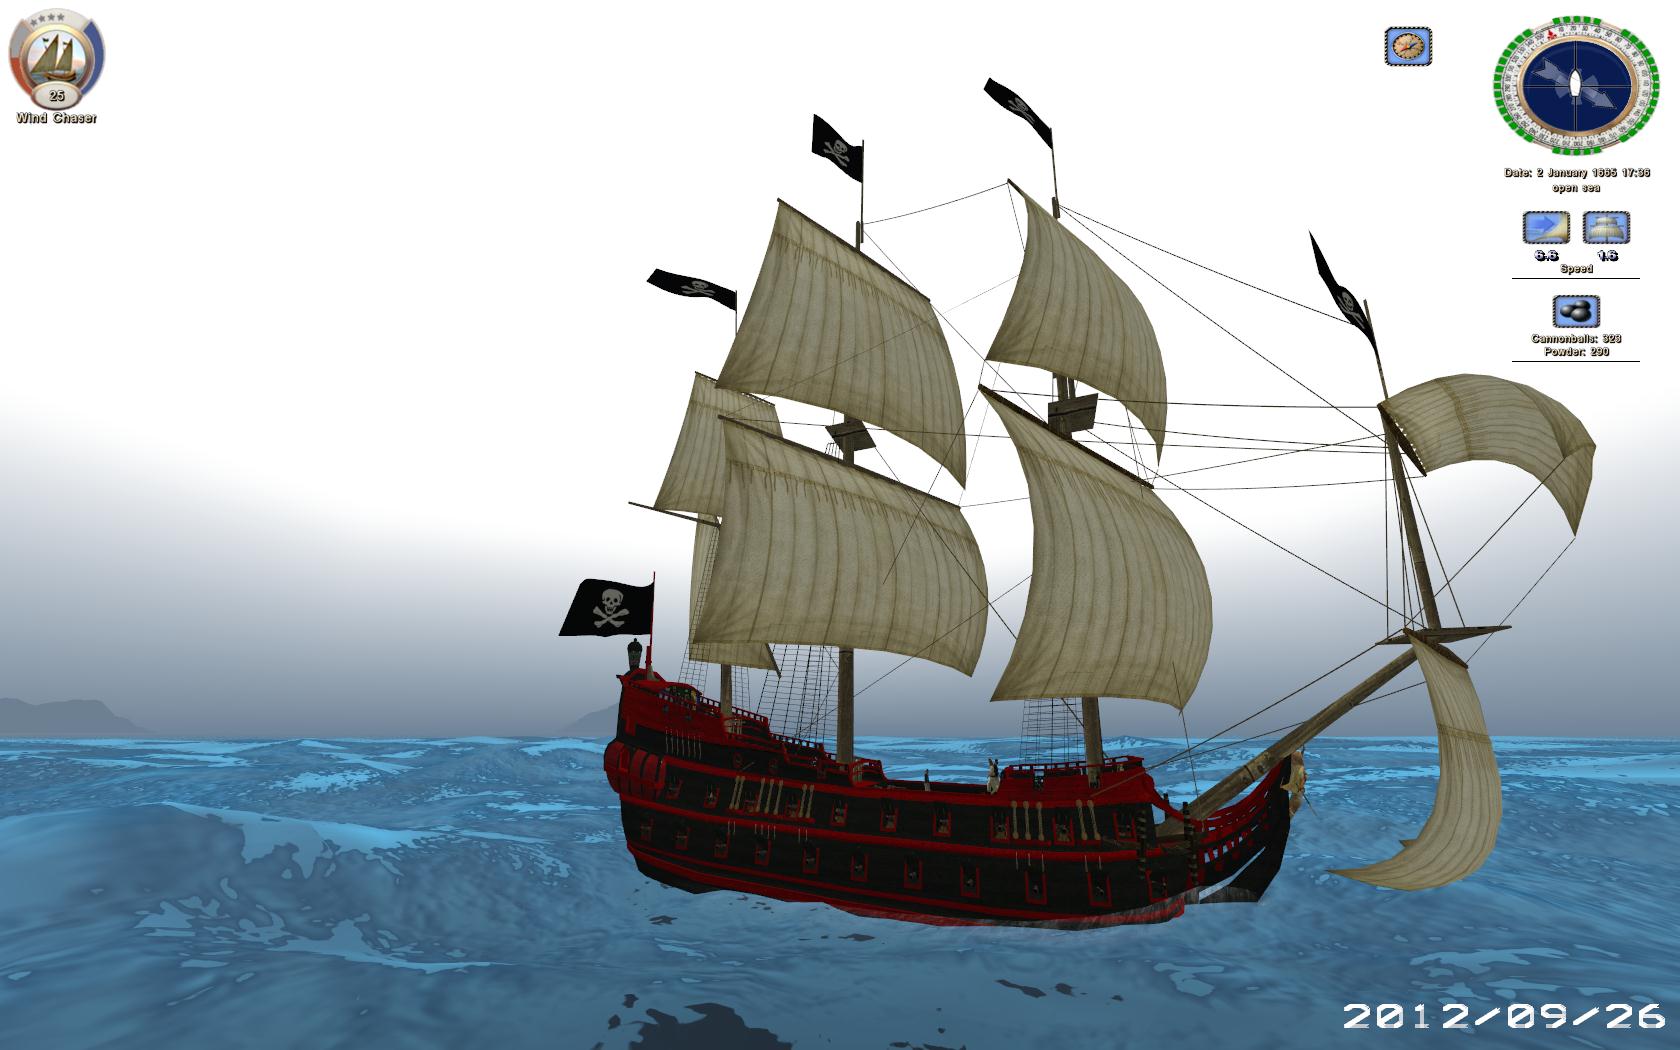 frigate pirate ship